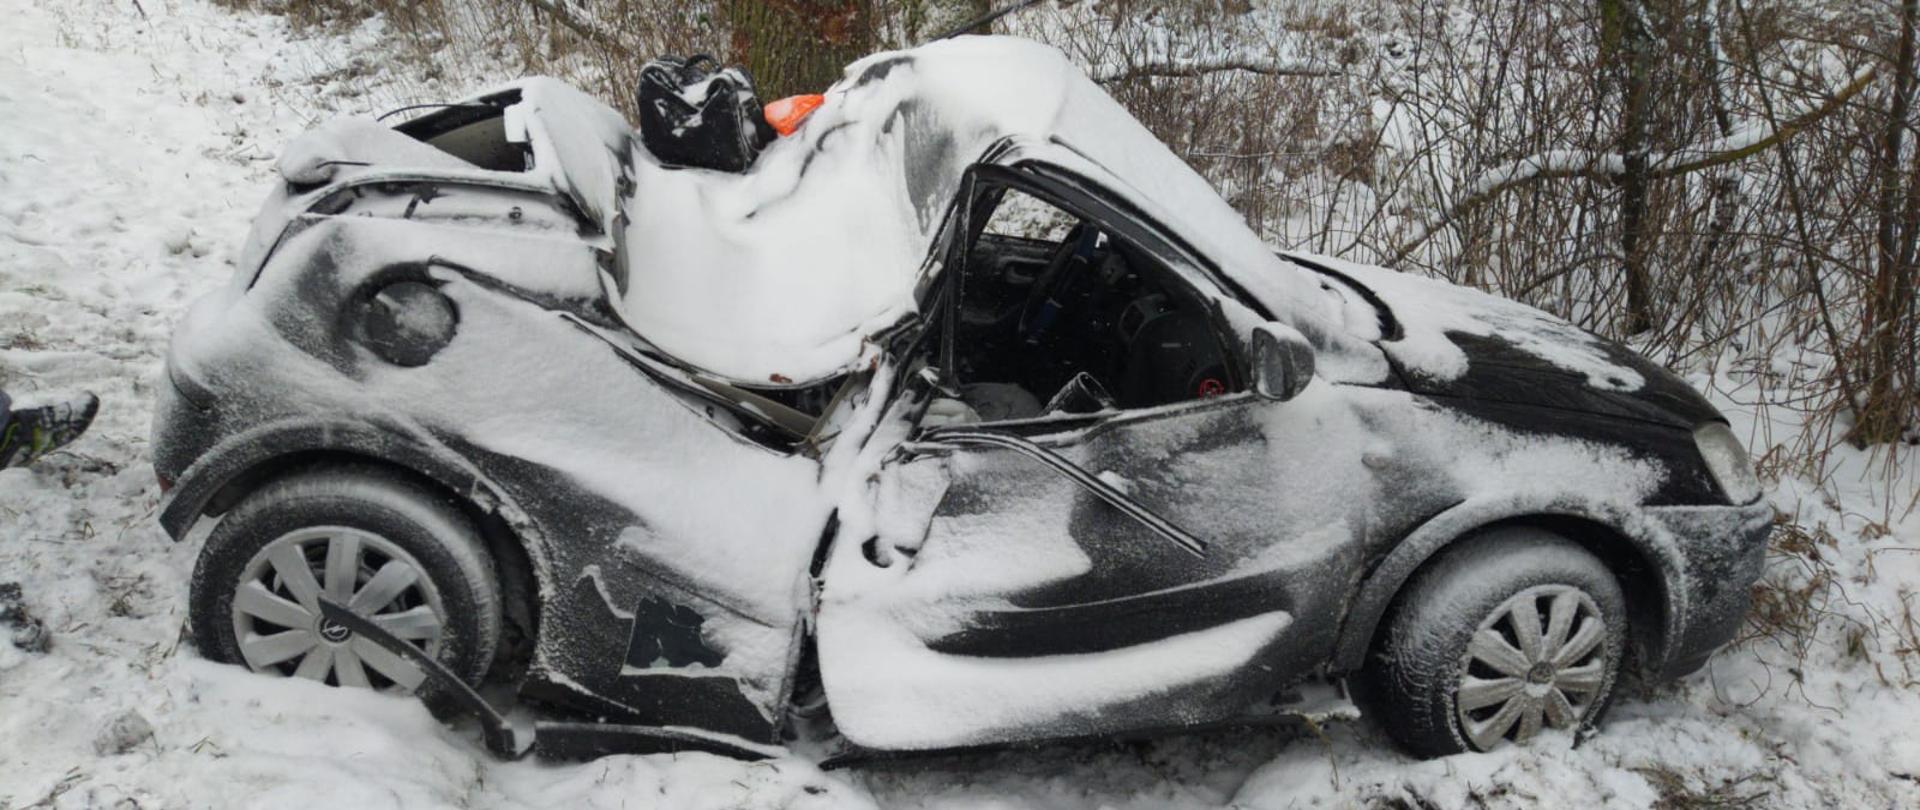 Czarny samochód marki Opel po dachowaniu, z wgiętym dachem. Znajduje się w rowie obok drogi. Pora zimowa, ziemia pokryta śniegiem. 